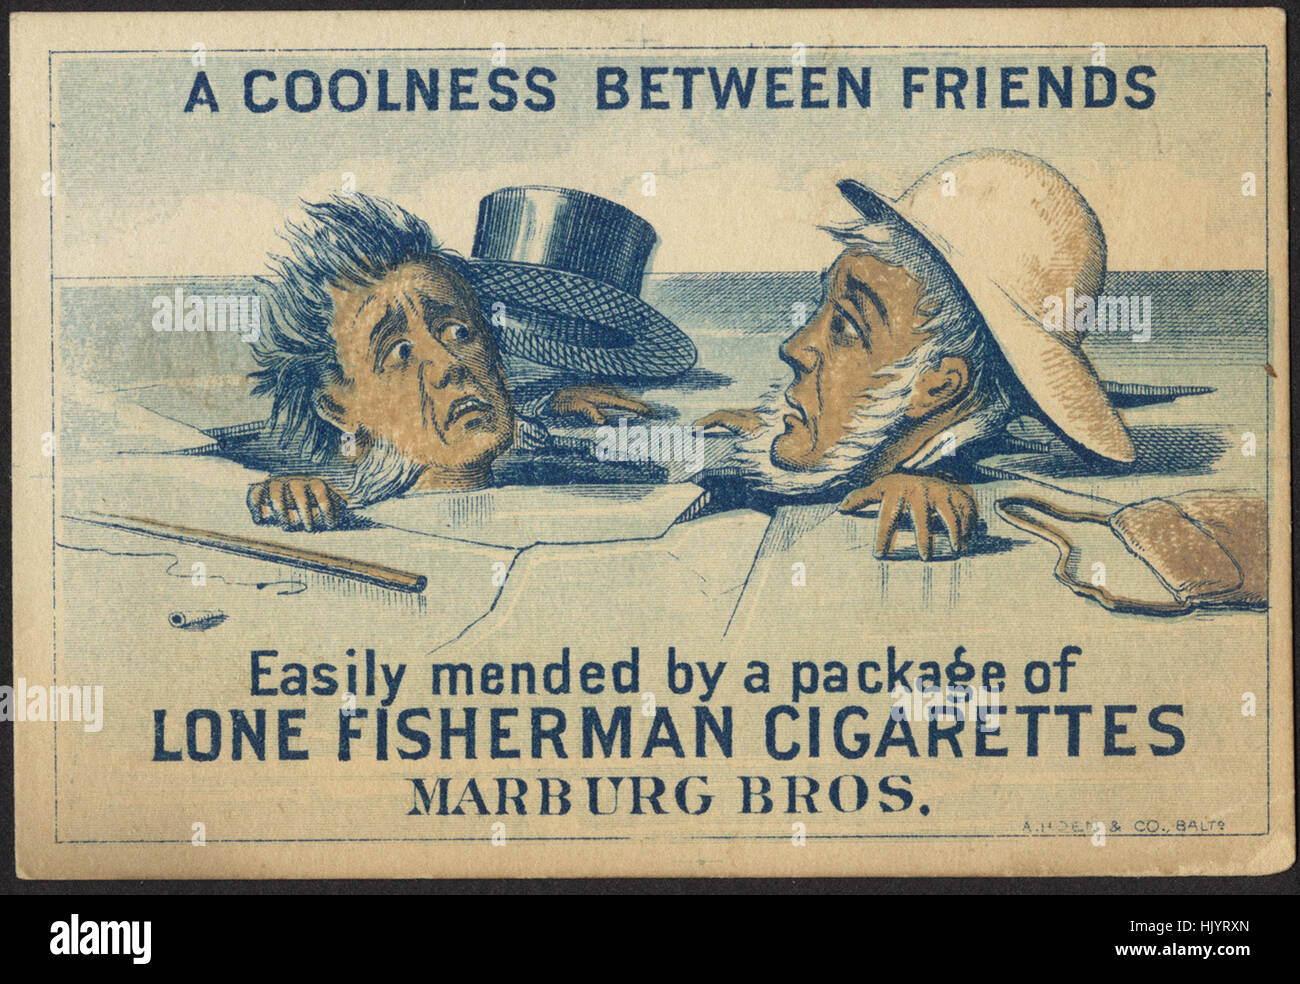 Eine kühle zwischen Freunden, die leicht durch ein Paket von Lone Fischer Zigaretten geflickt Stockfoto